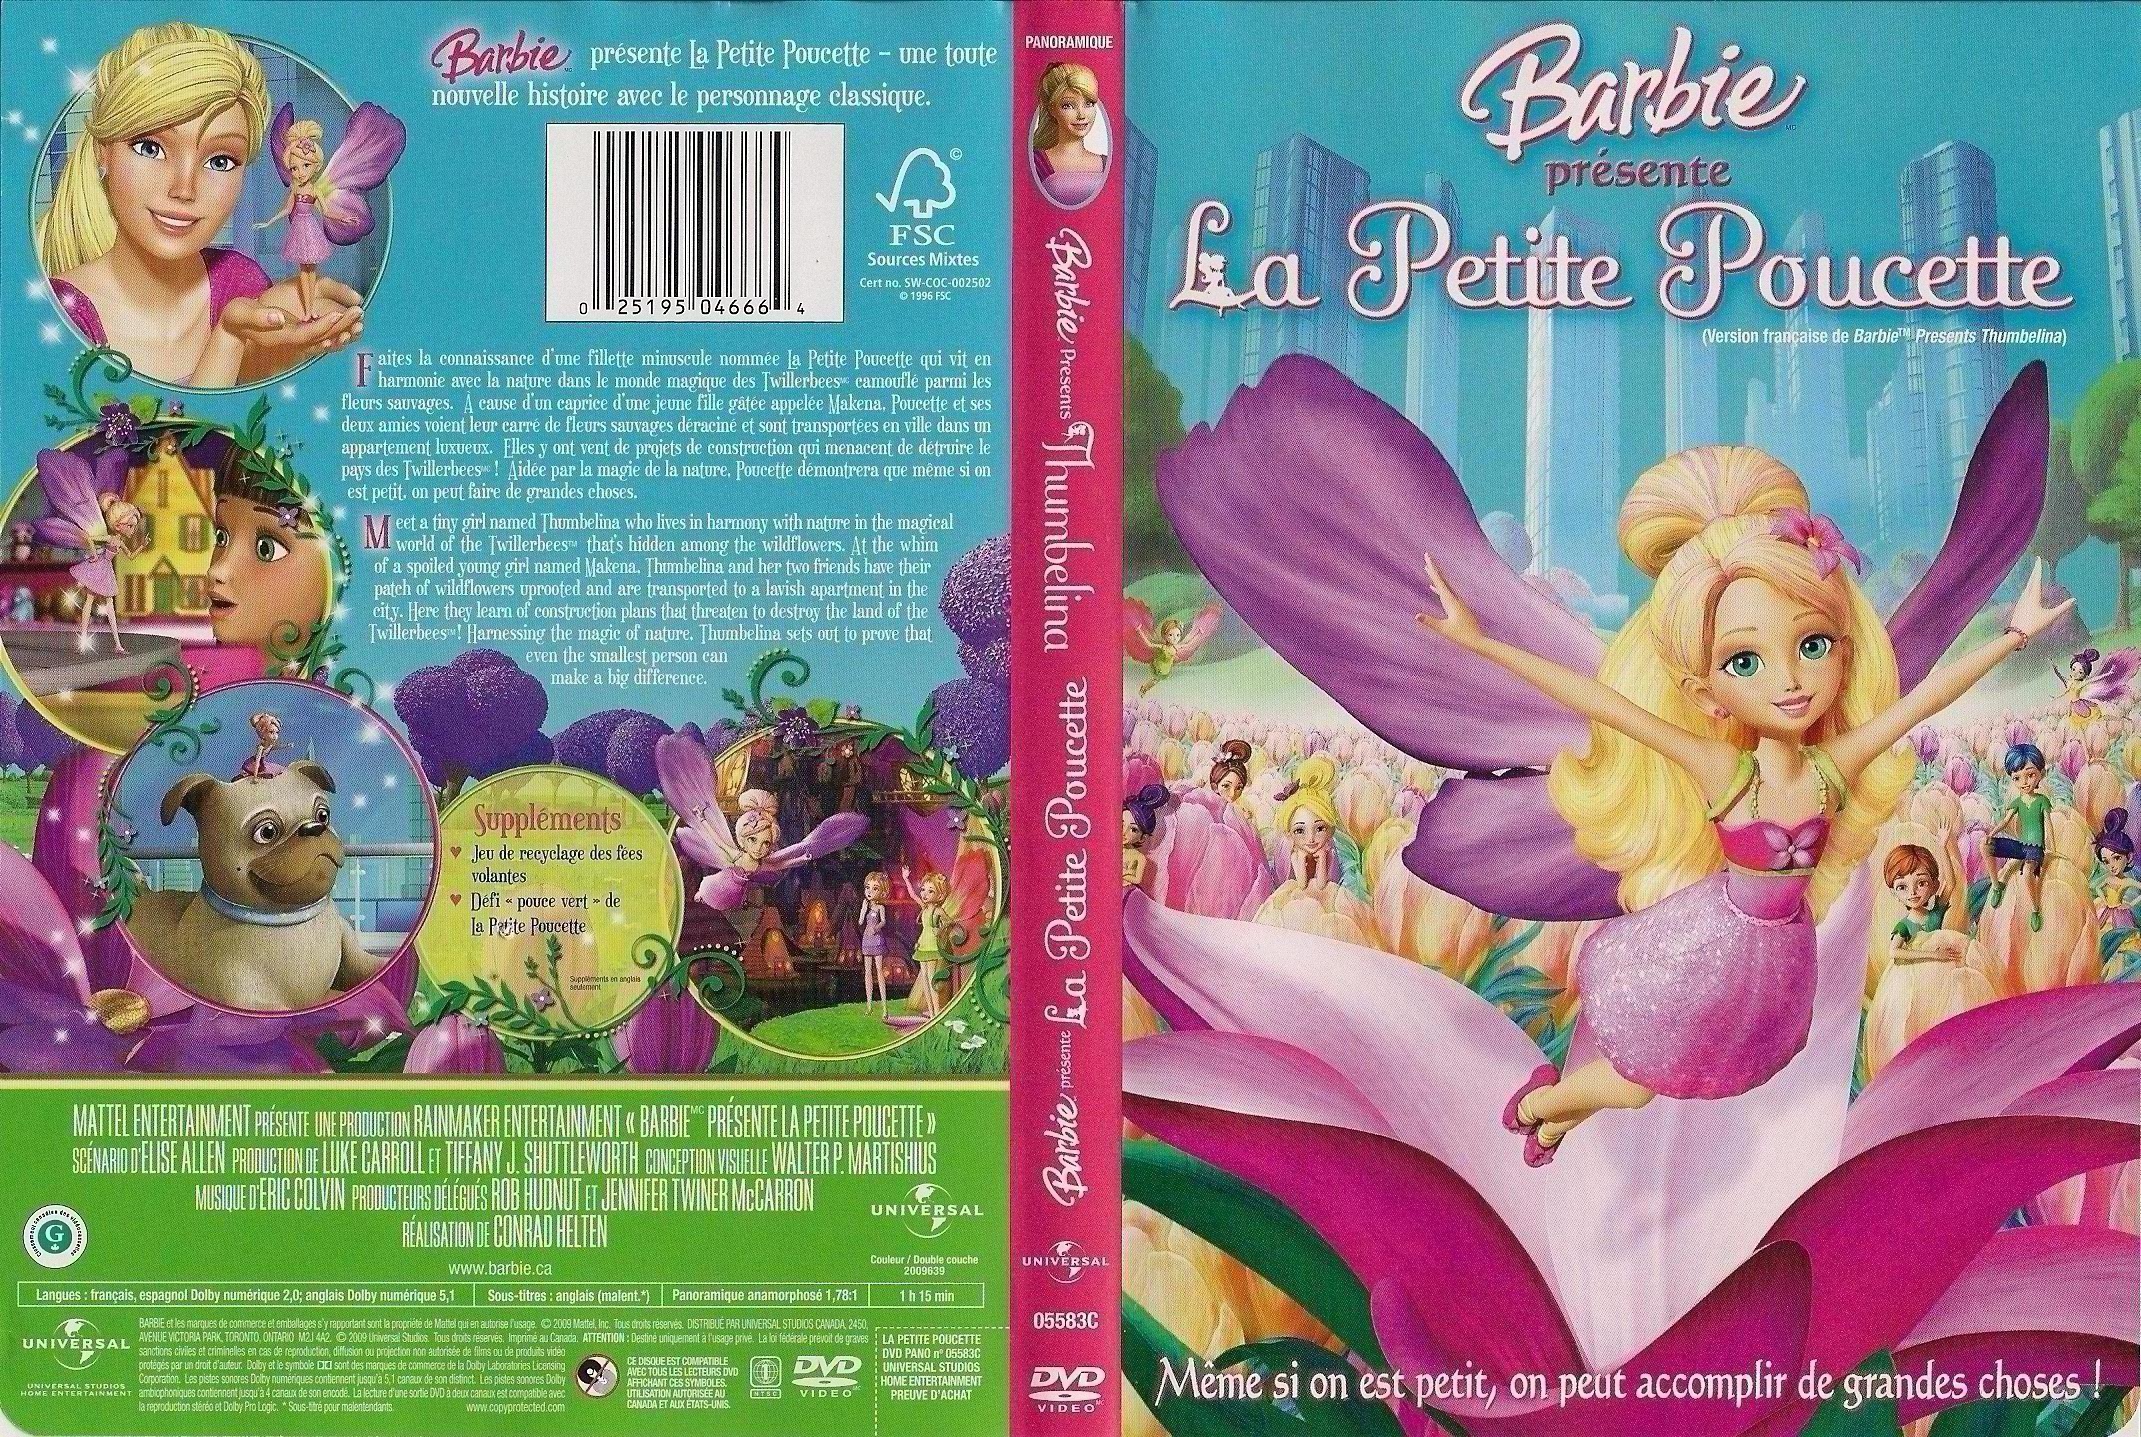 Jaquette DVD Barbie la petite poucette (Canadienne)